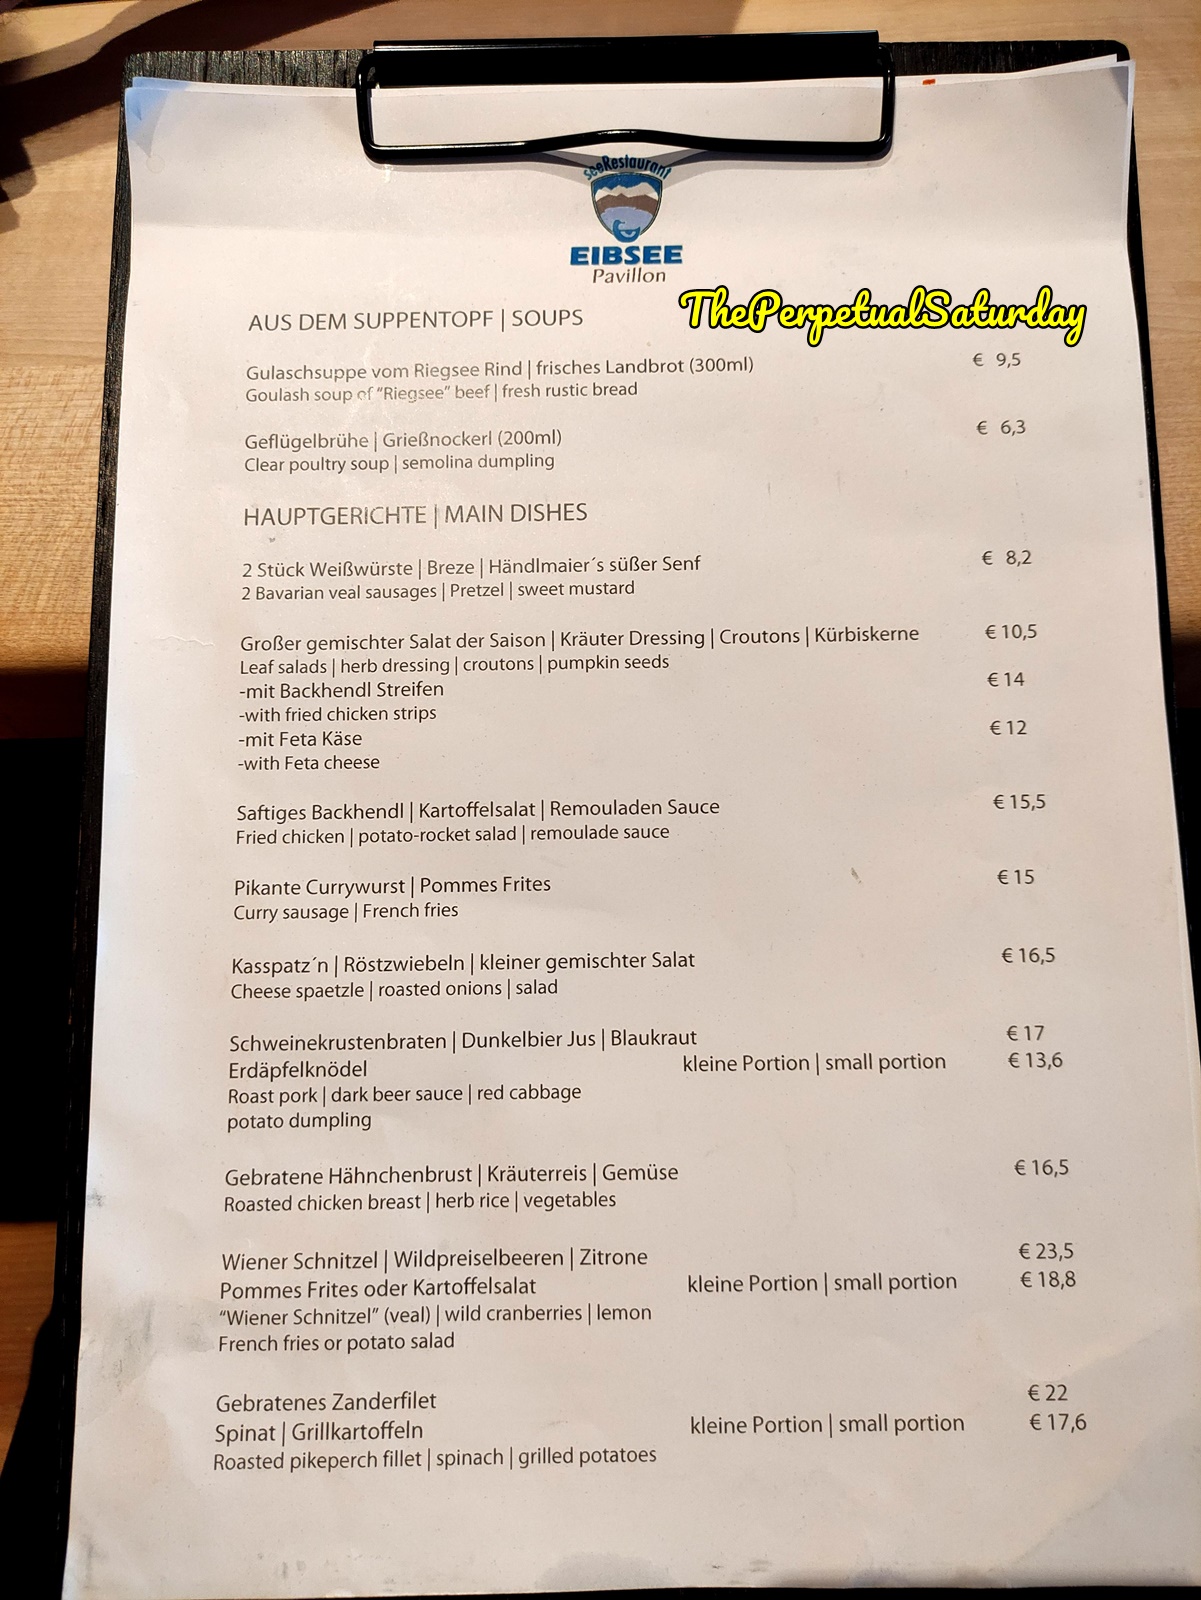 Eibsee Pavilion Restaurant menu Germany, Eibsee lake restaurant